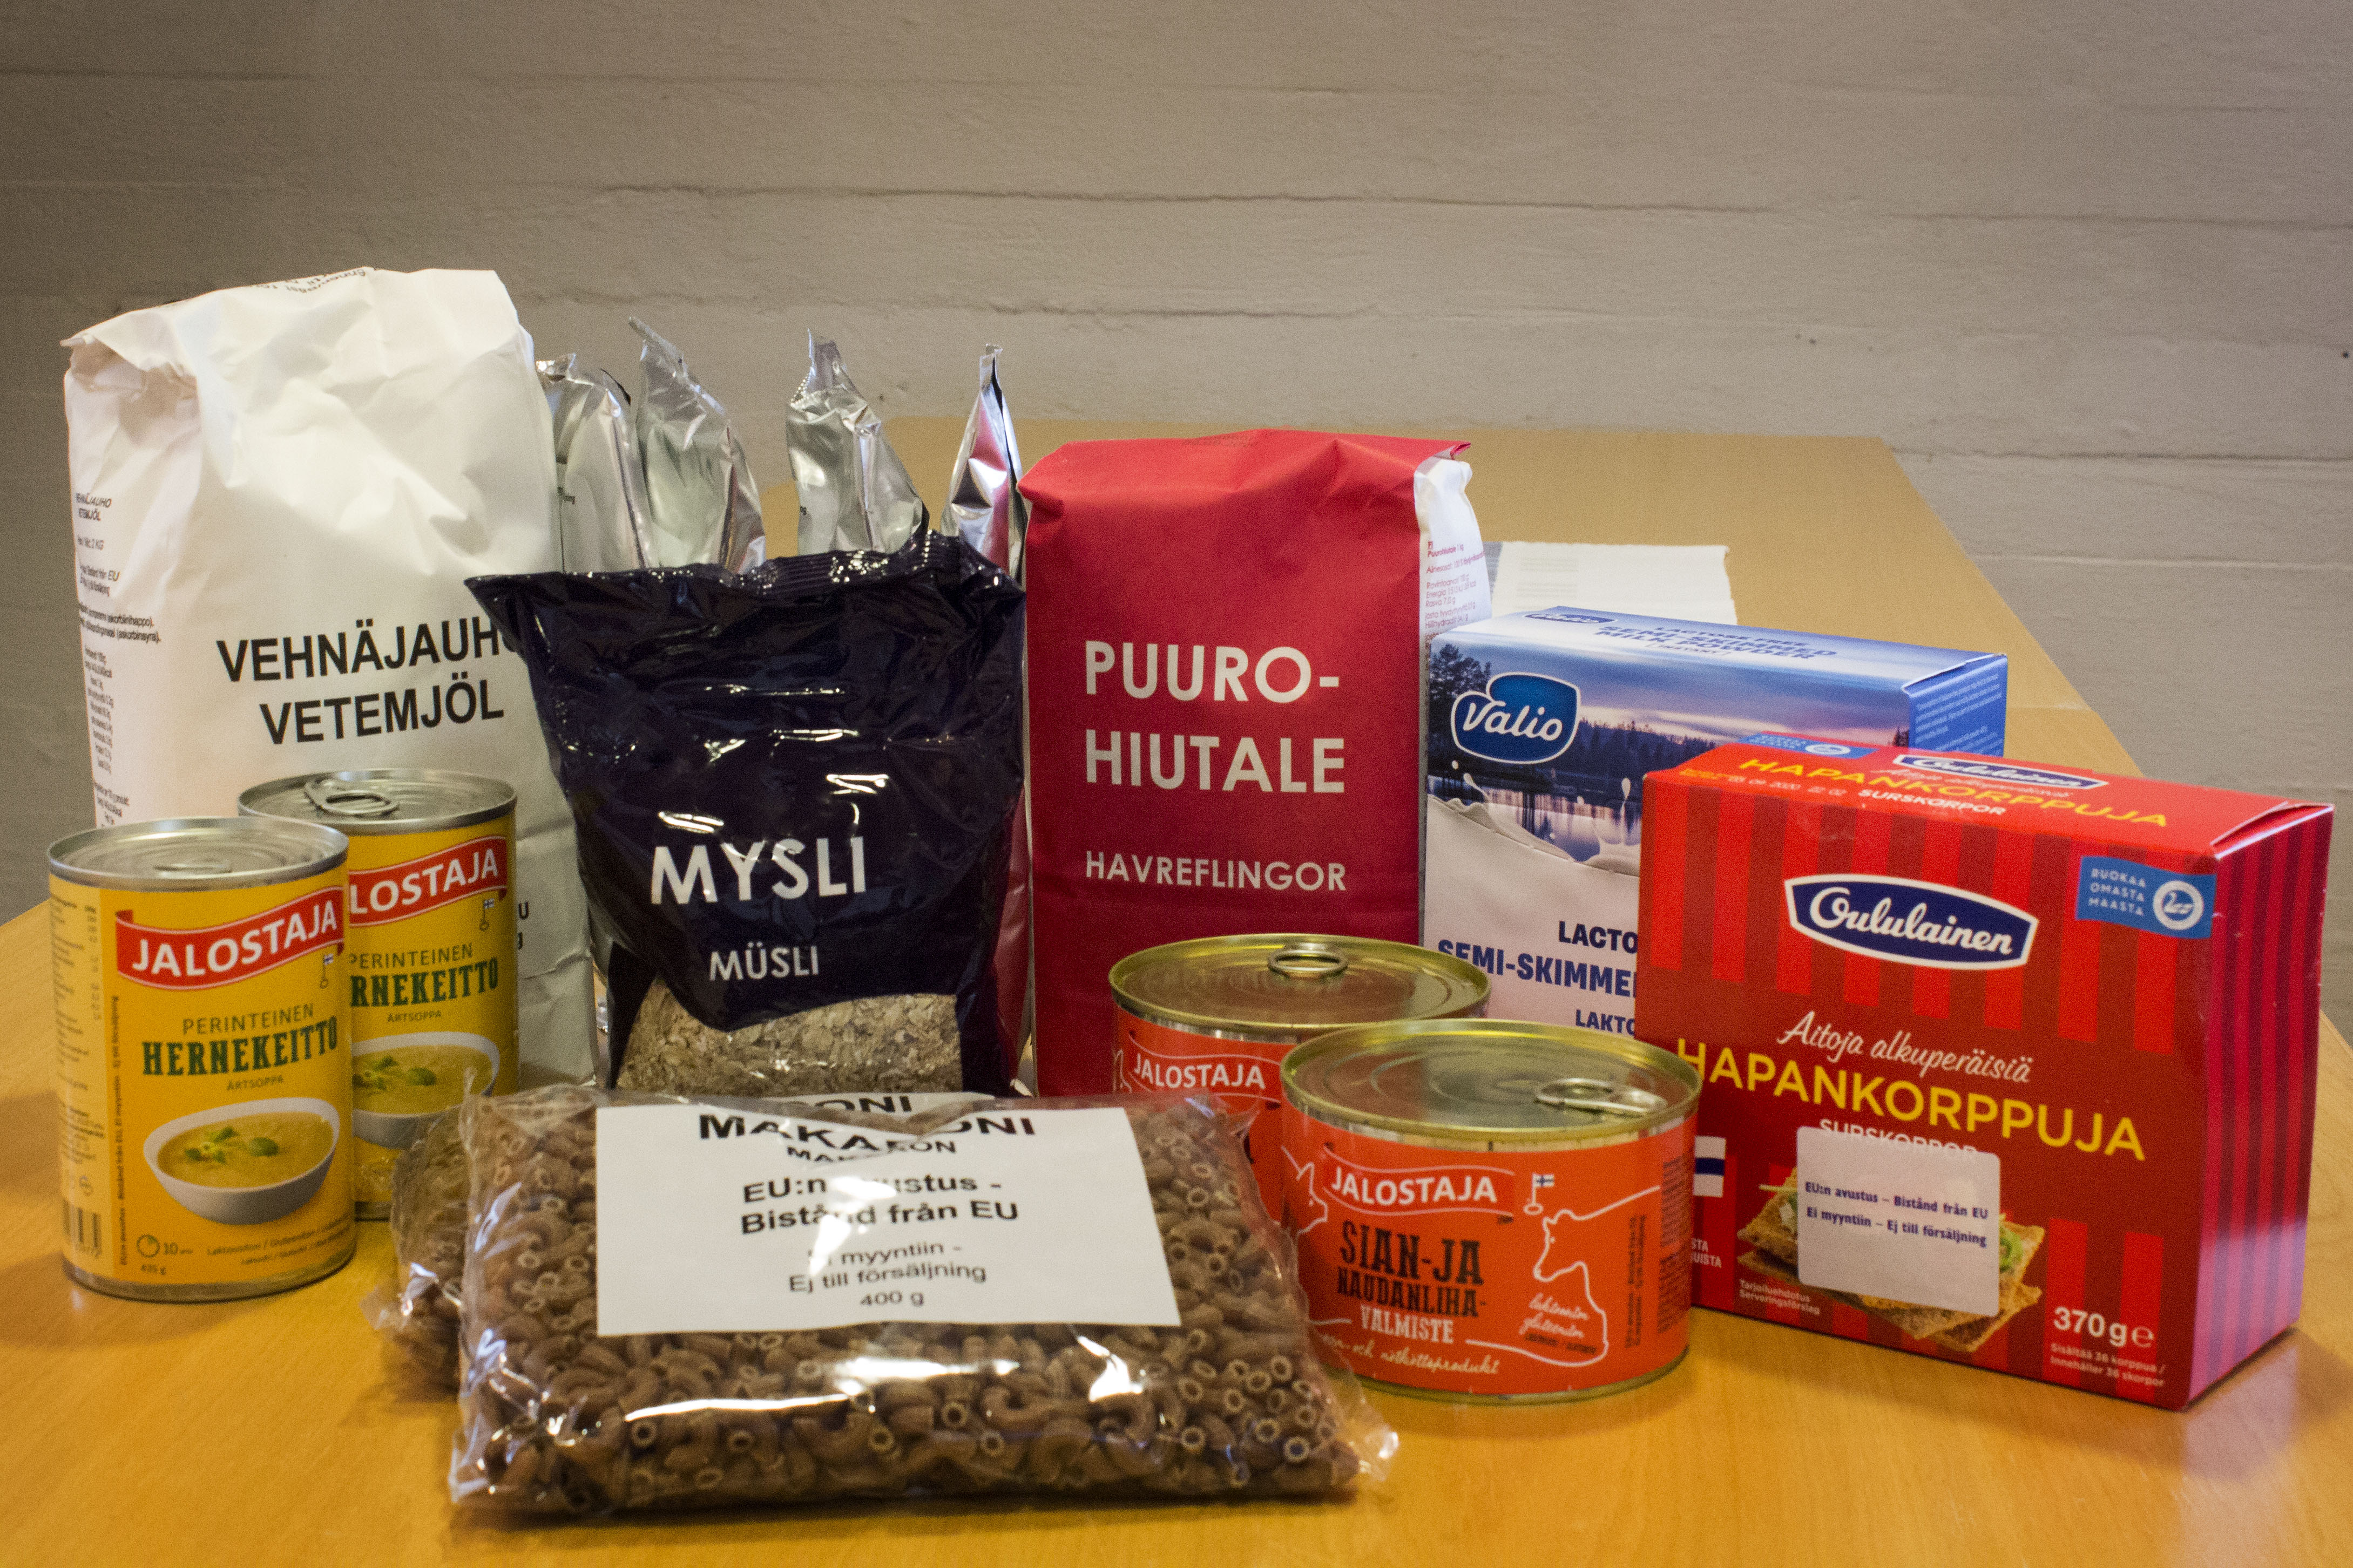 EU-ruokapaketin tuotepakkauksia pöydällä: mm. makaronia, puurohiutaleita, säilykepurkkeja ja hapankorppuja.